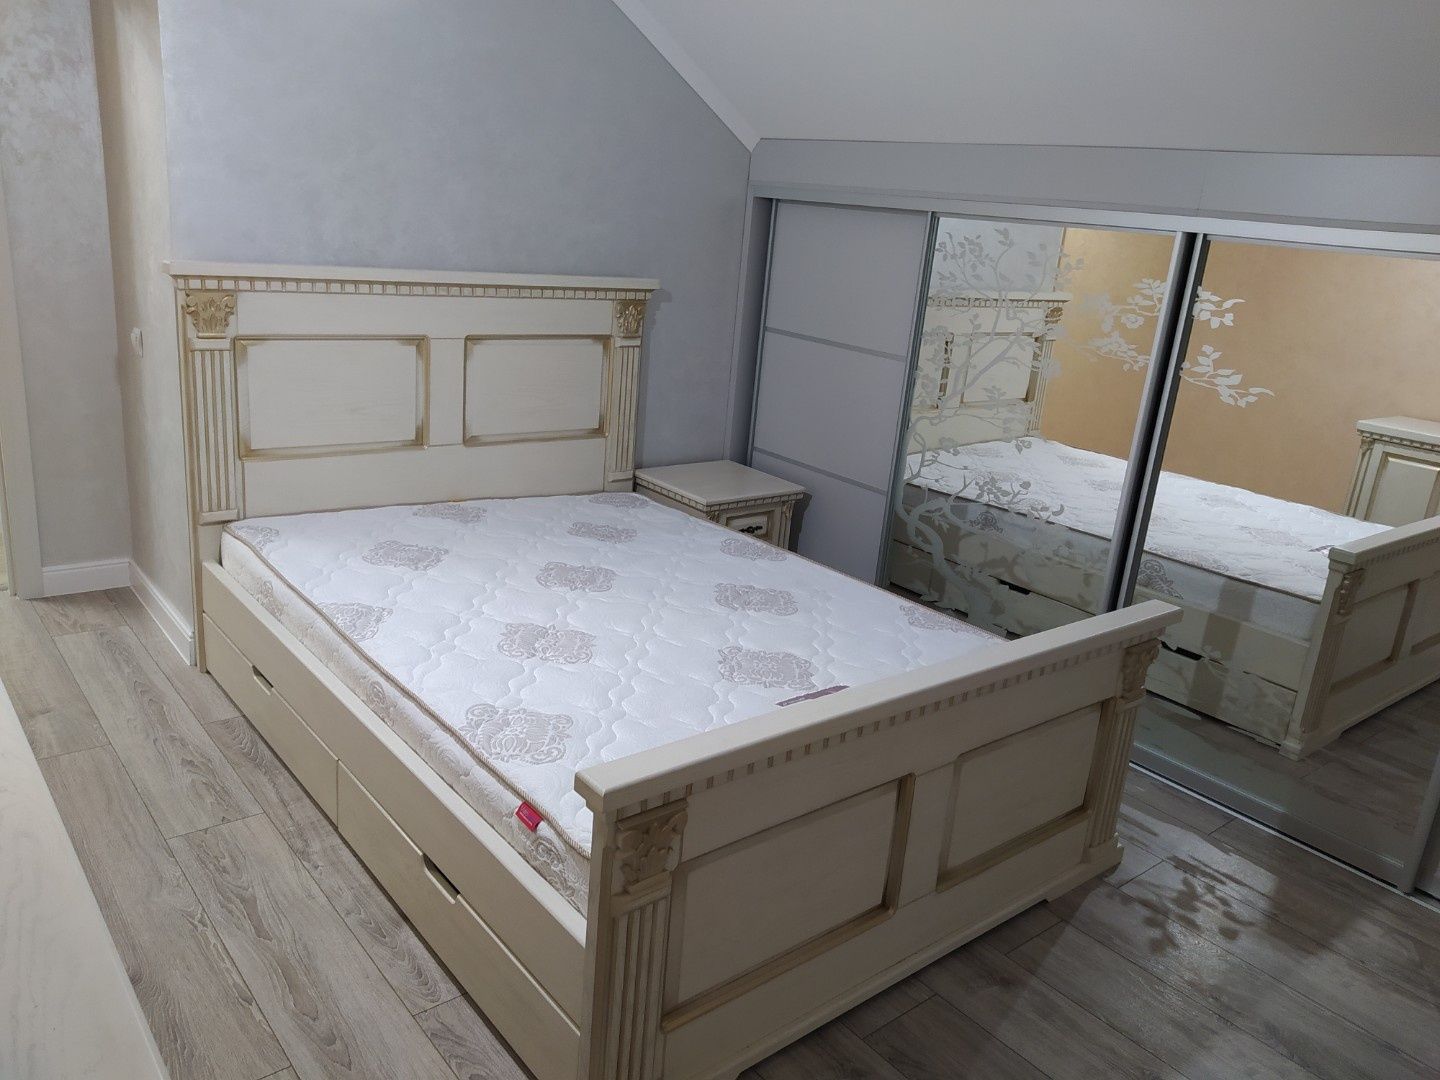 Ліжко двоспальне з масиву дуба,ясеня  (дерев'яне)